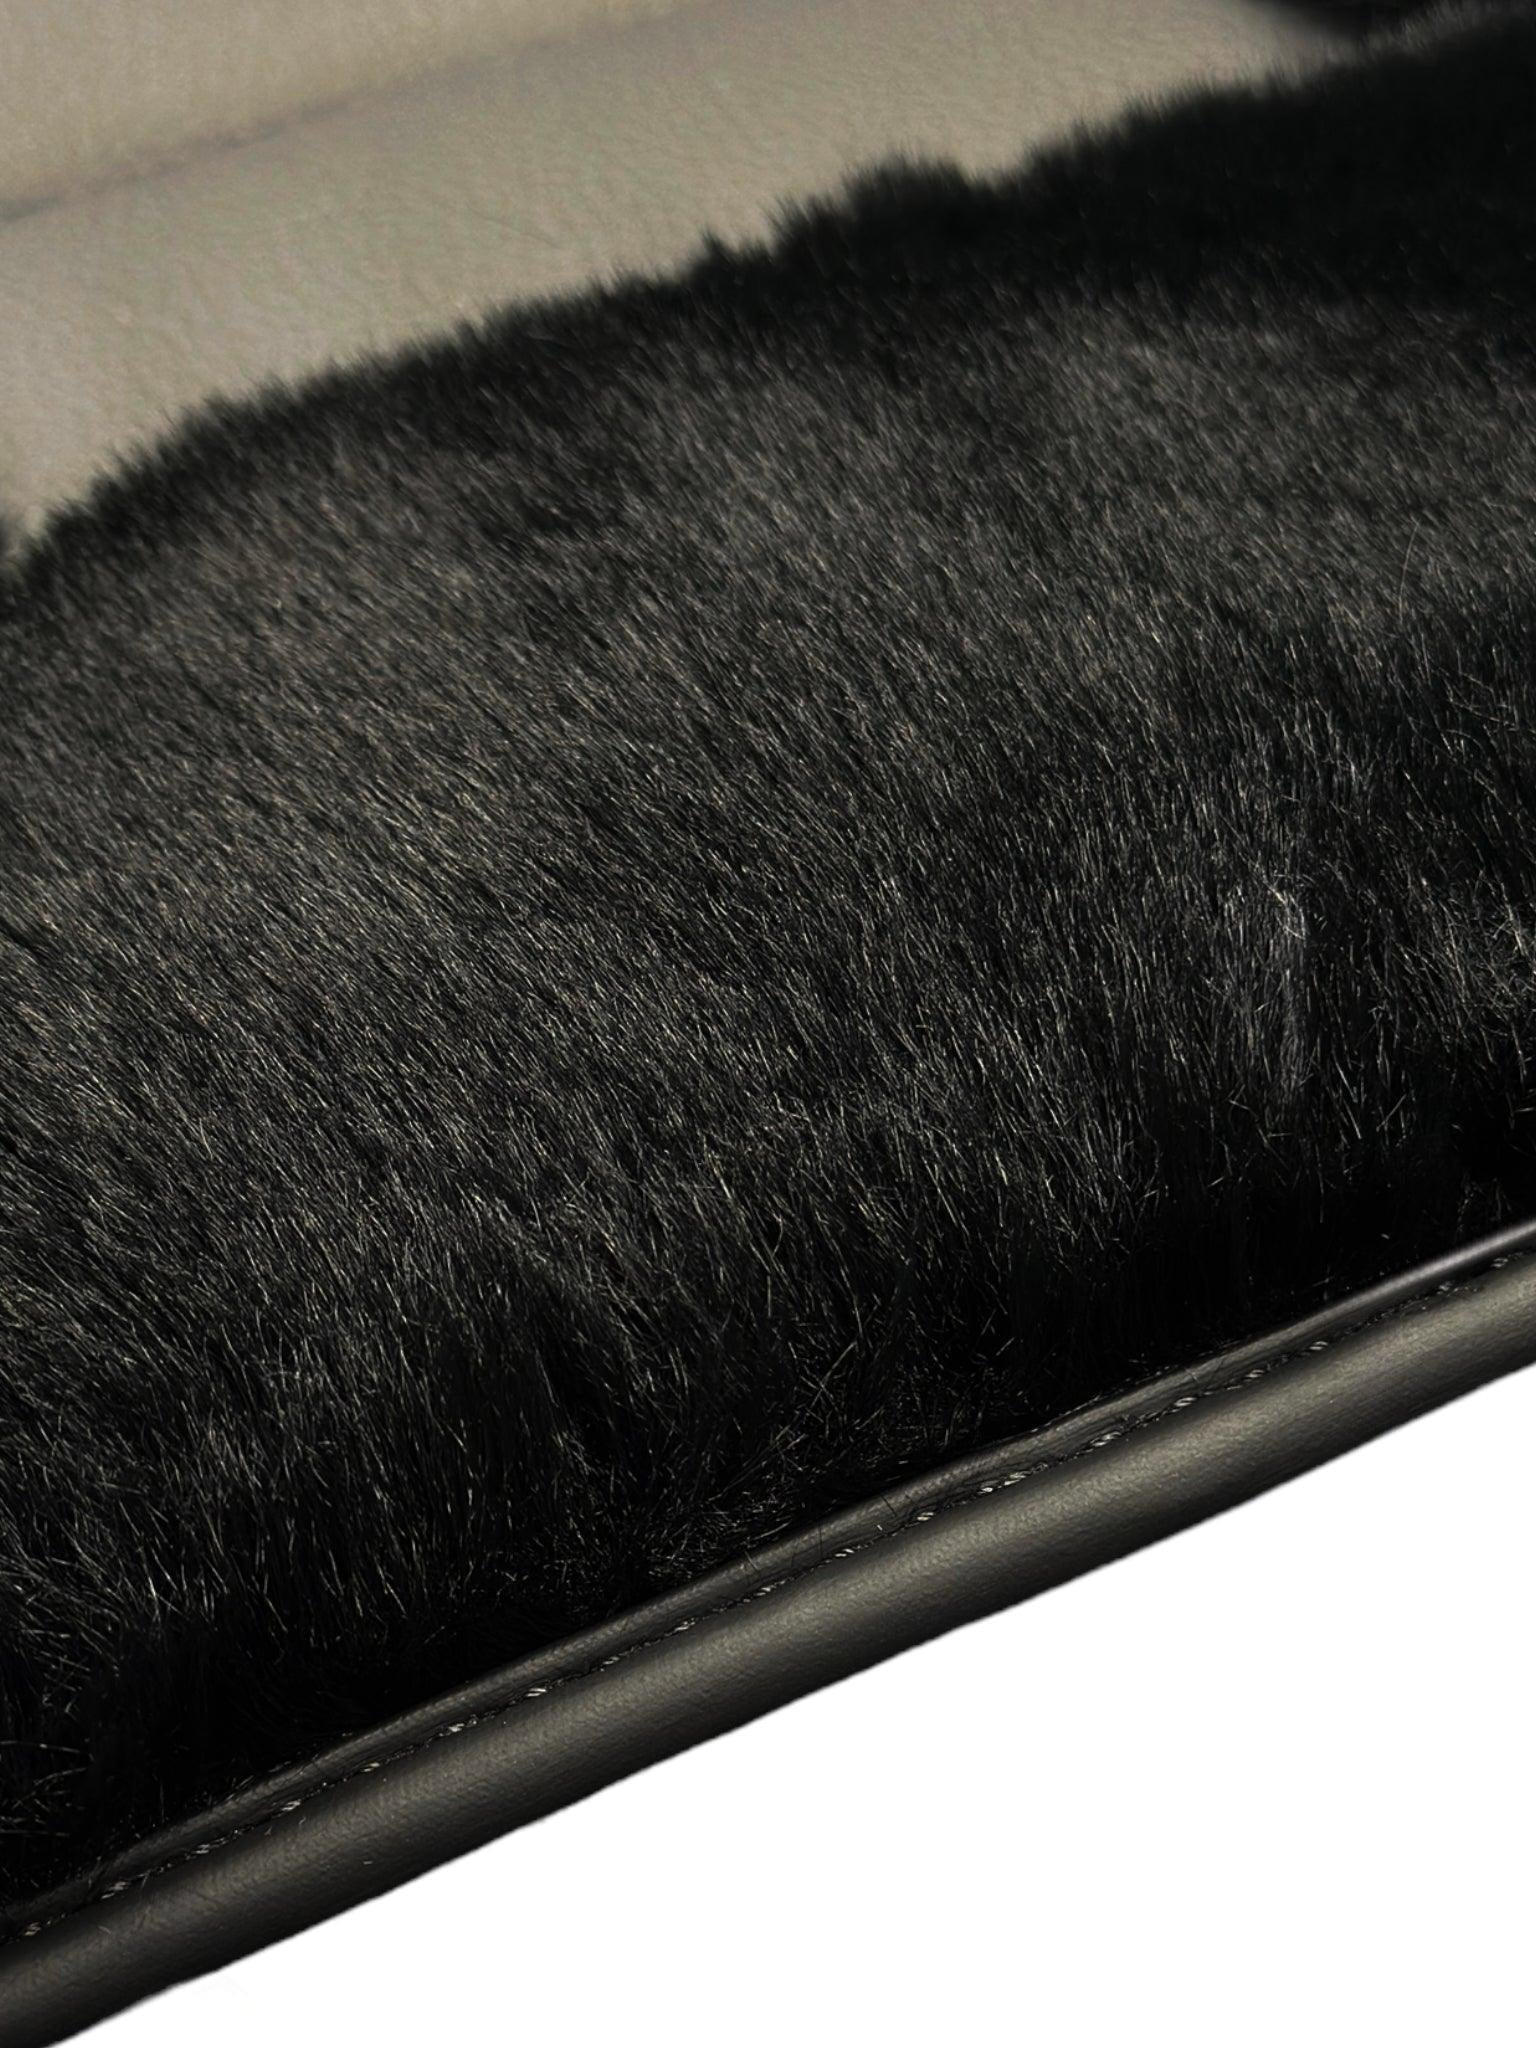 Black Sheepskin Floor Floor Mats For BMW X5 Series E70 ER56 Design